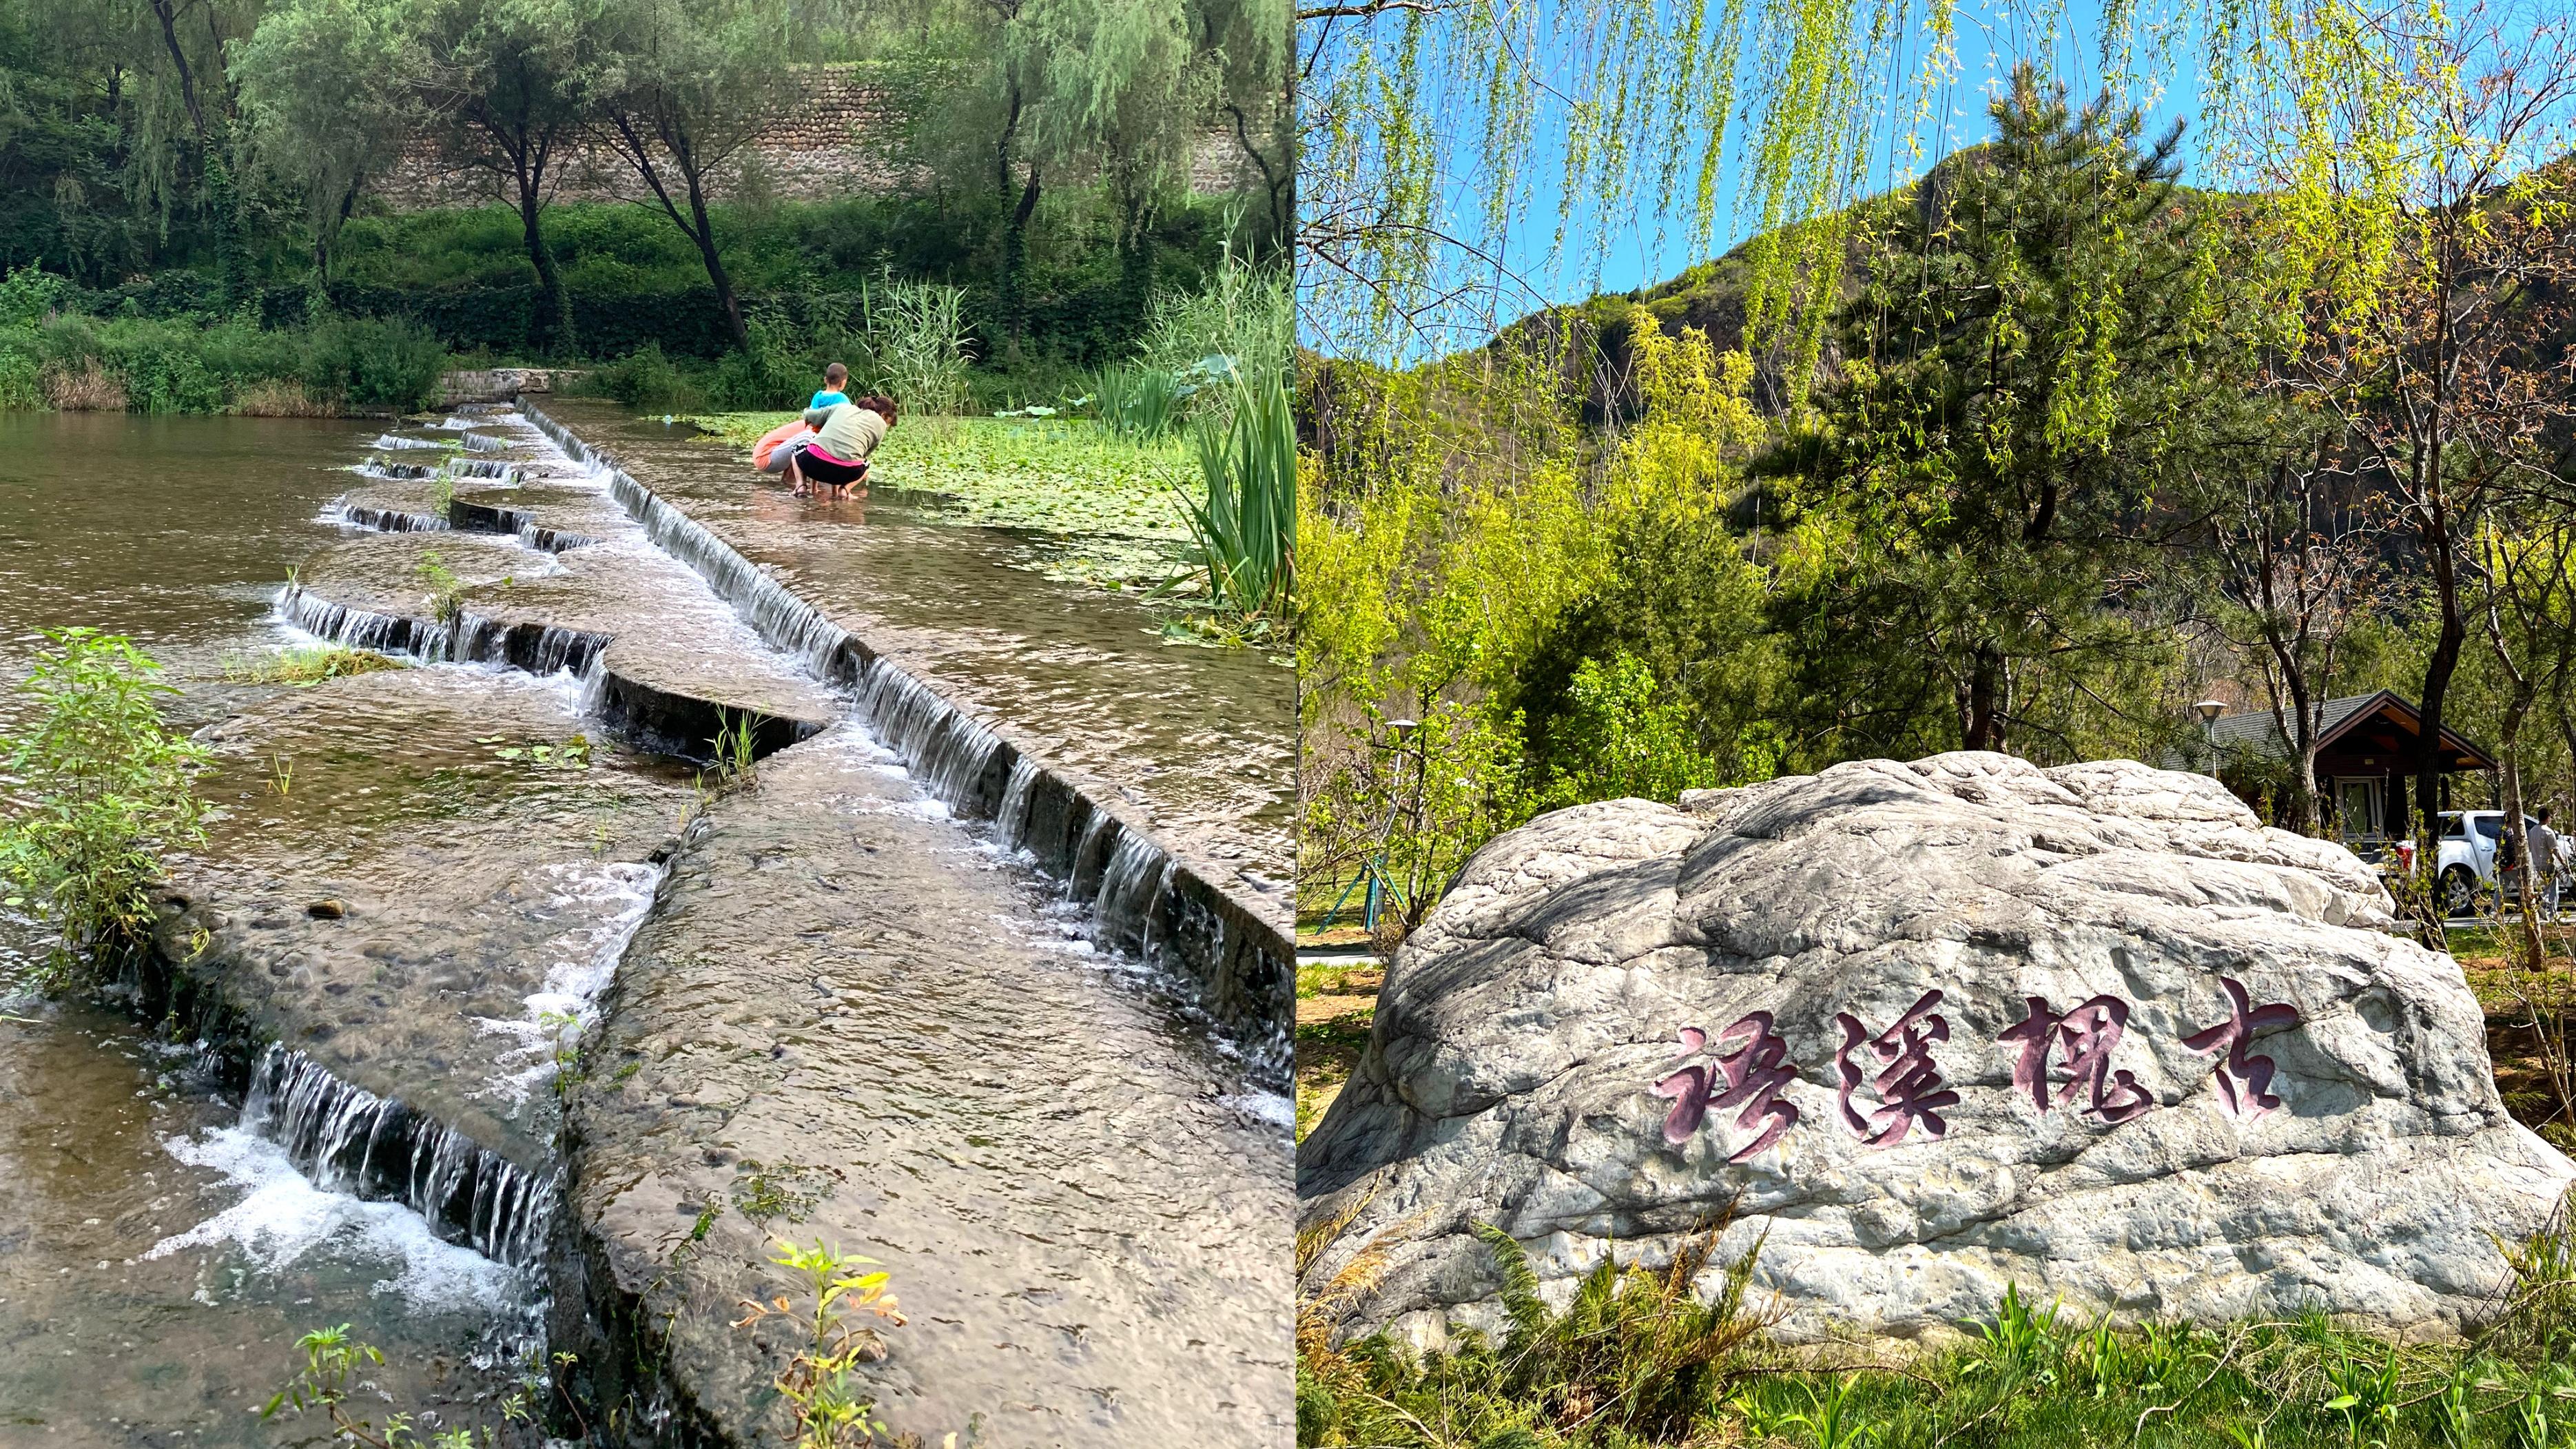 婺源|北京夏日玩水溯溪好去处，有山有水还免费，正常开放神秘小众